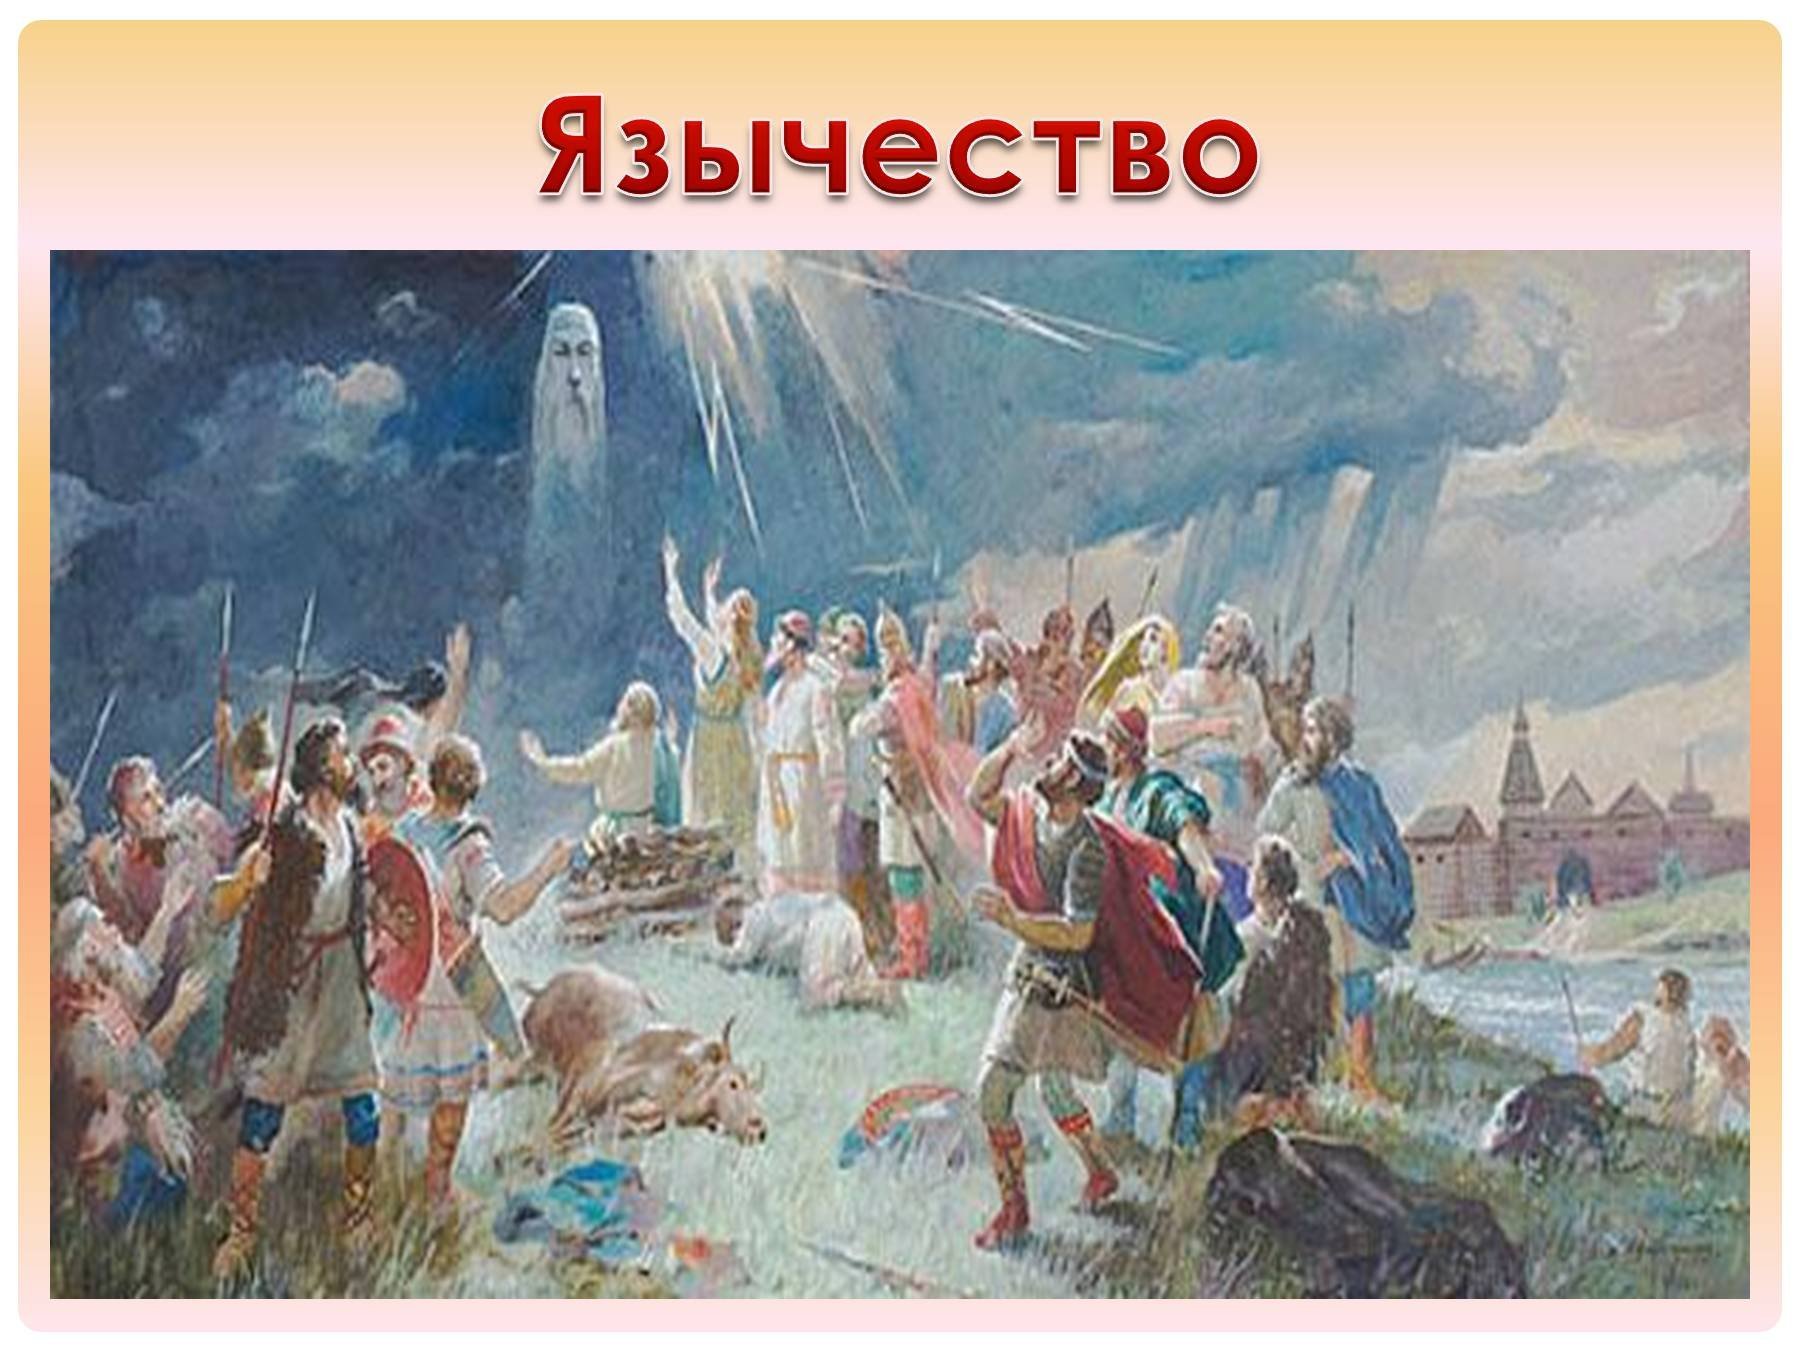 Крещение восточных славян